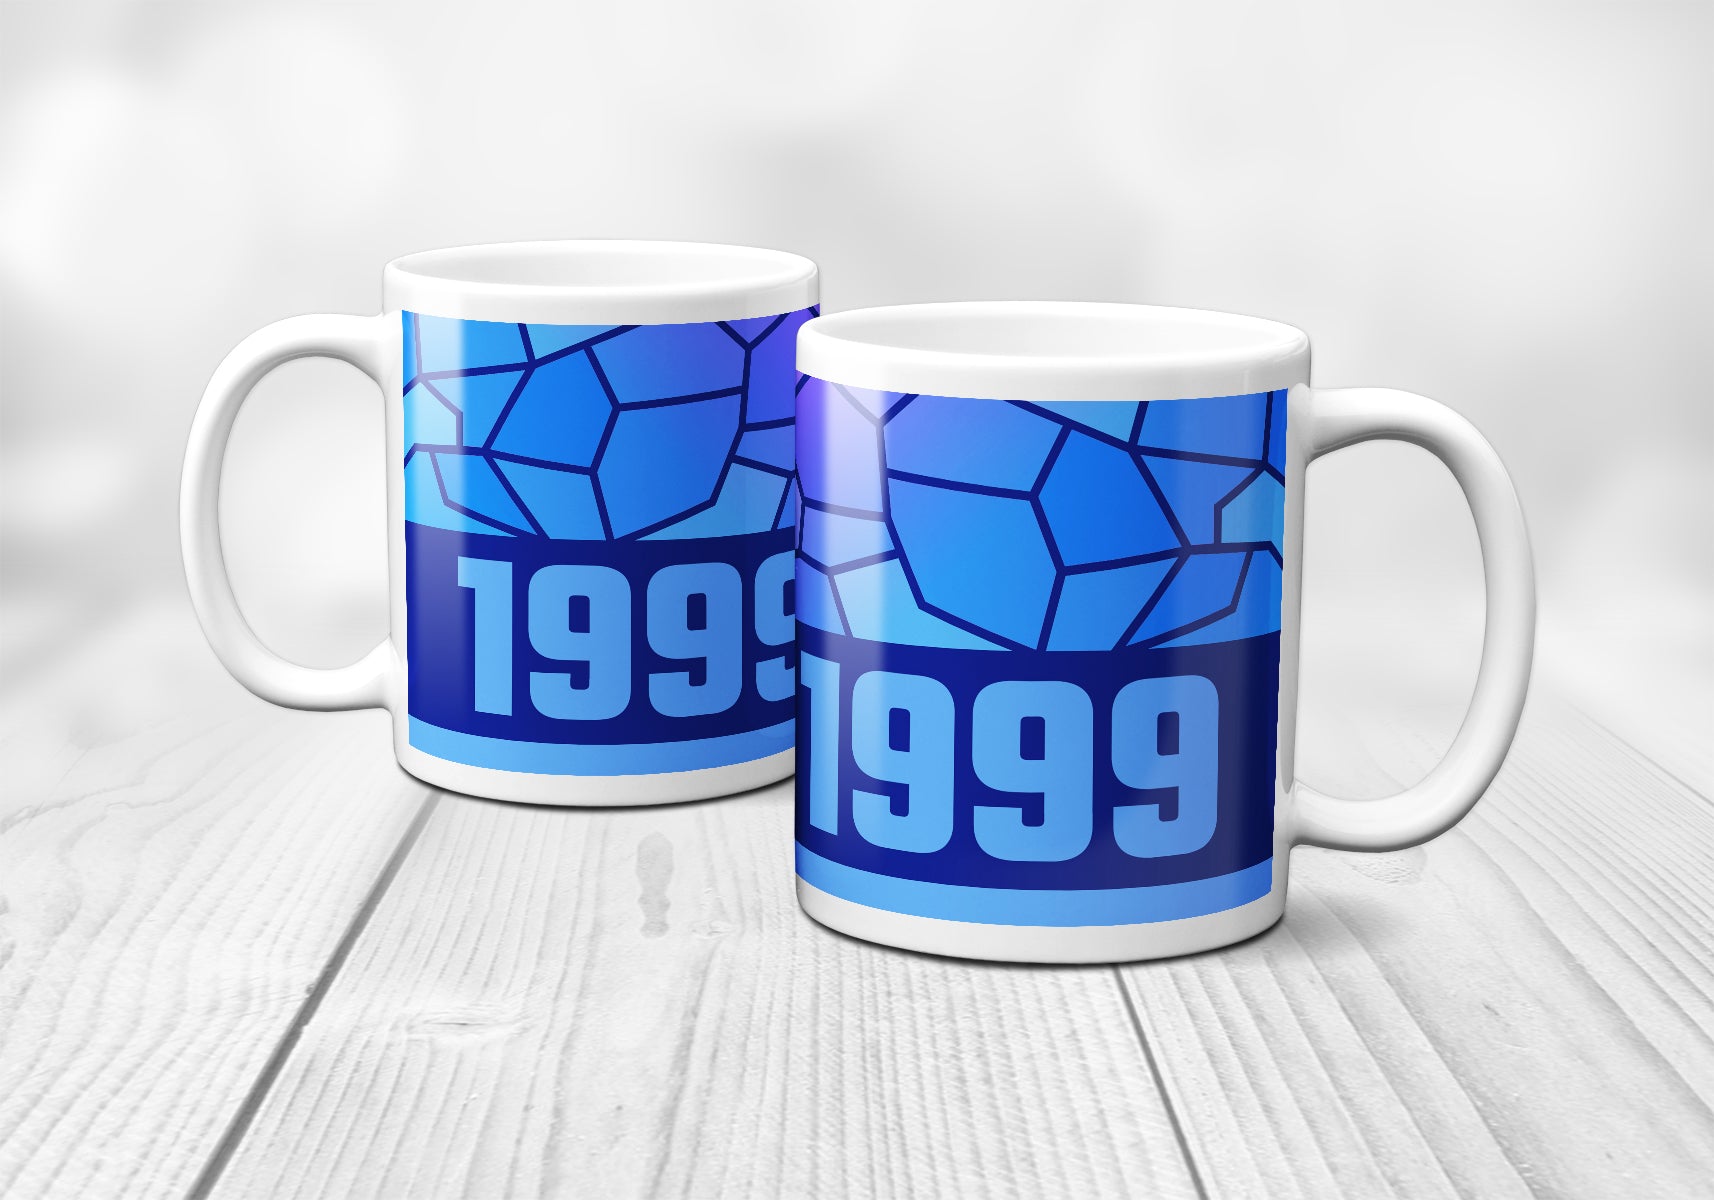 1999 Year Mug (11oz, Royal Blue)